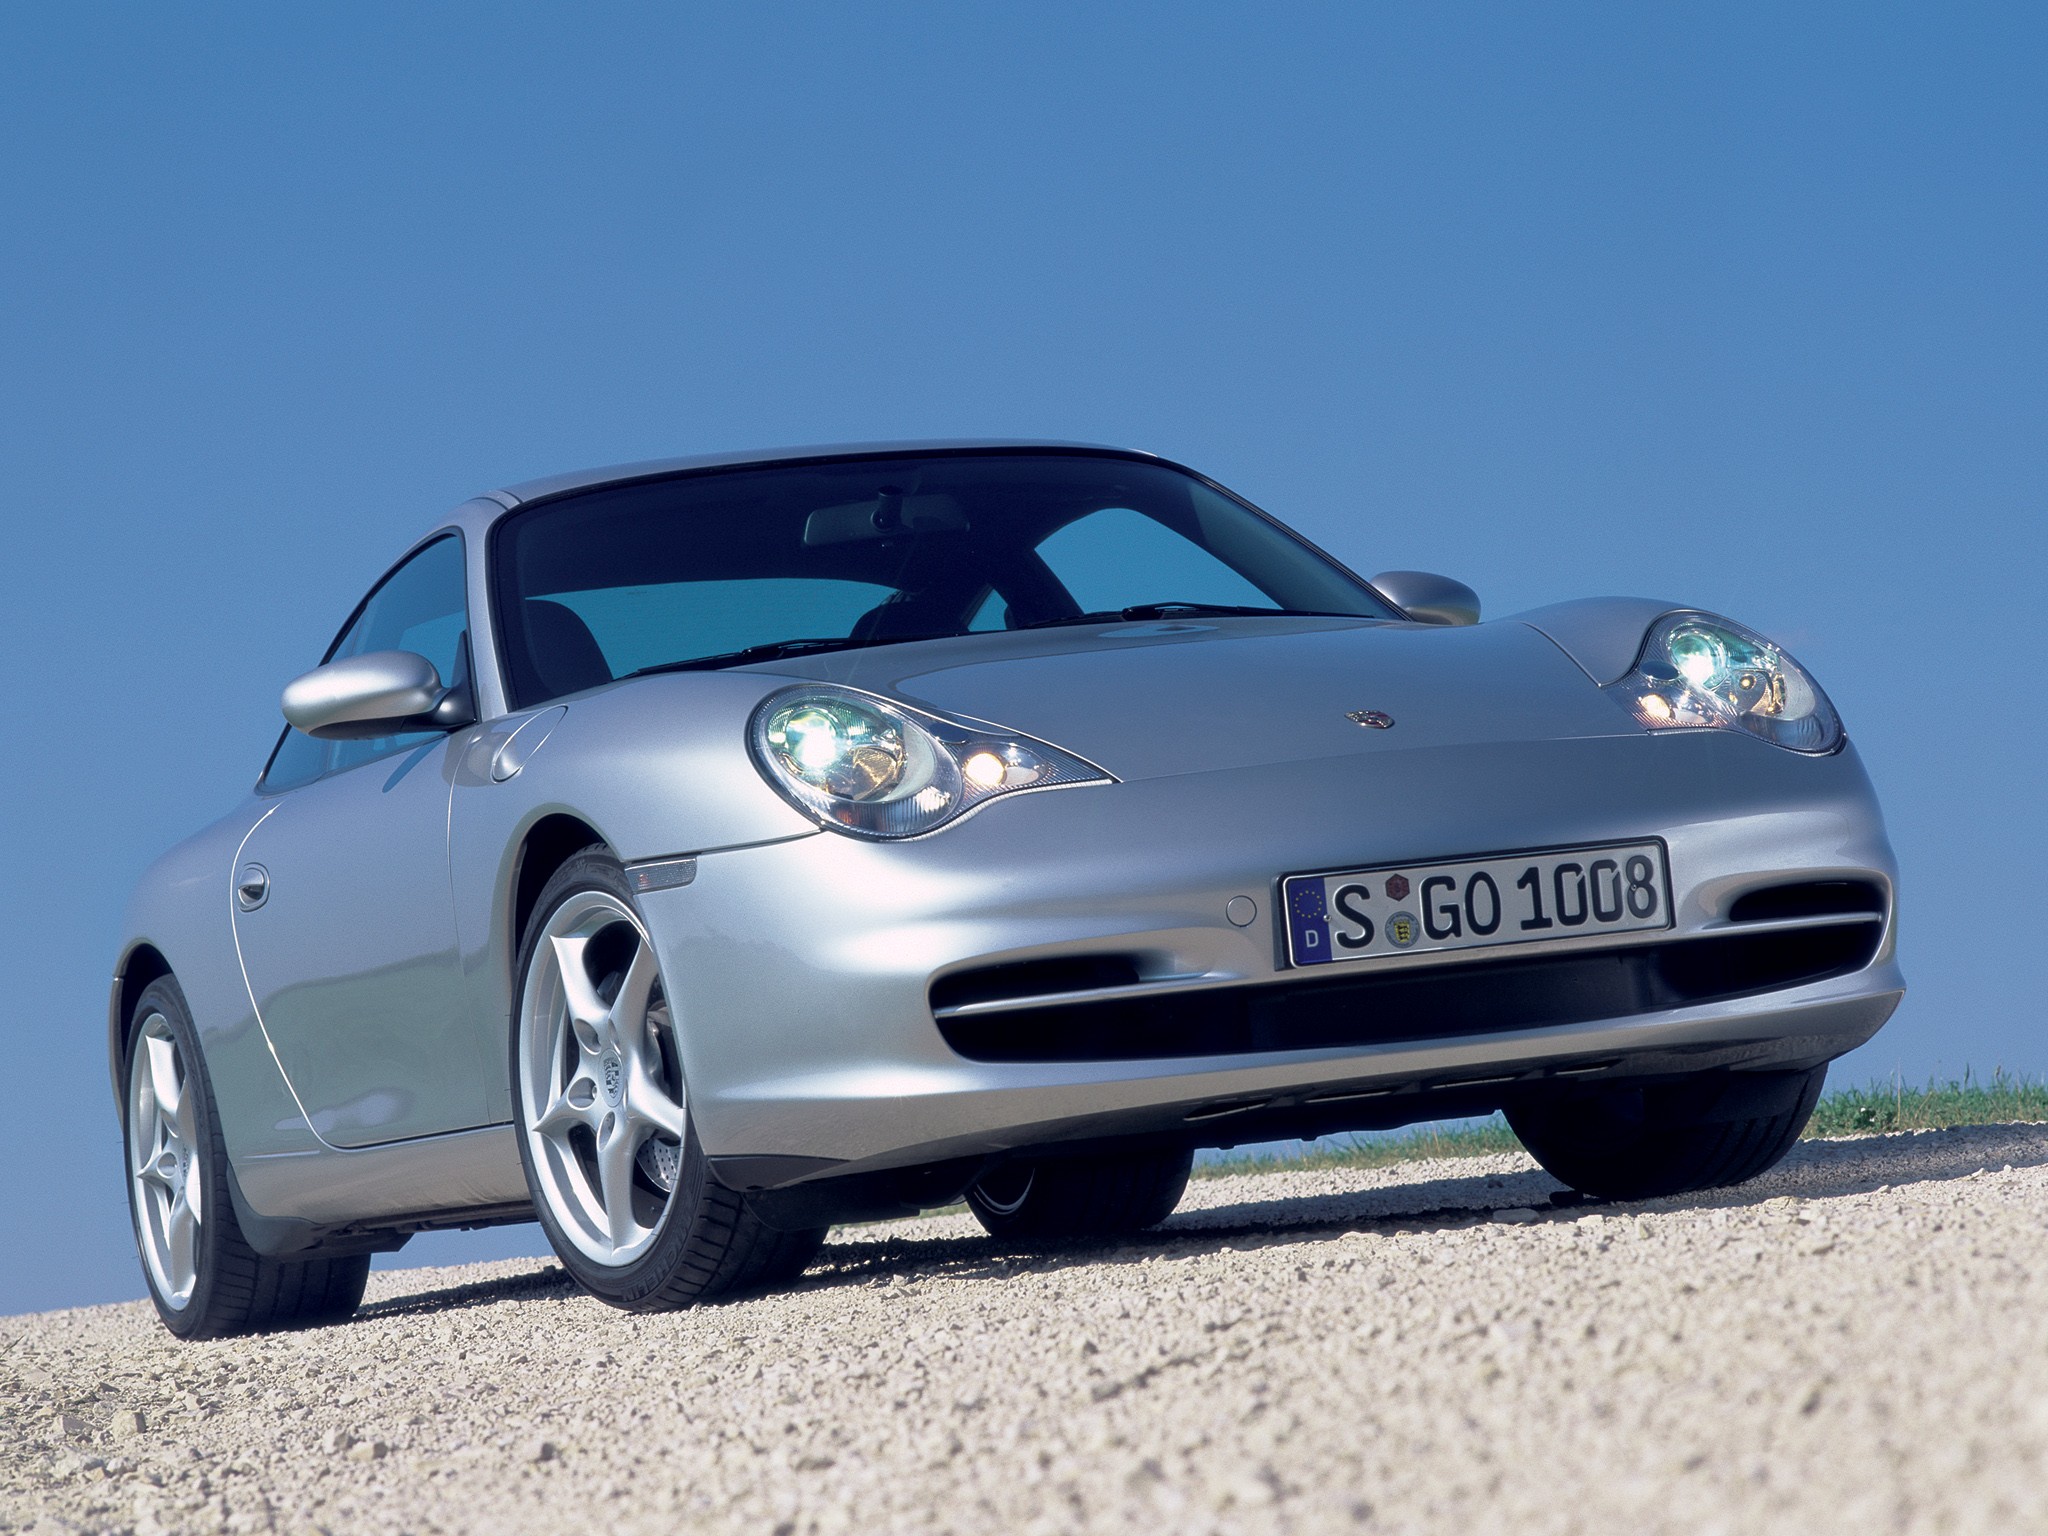 Porsche 911 (996) Sales & Production Numbers - Stuttcars